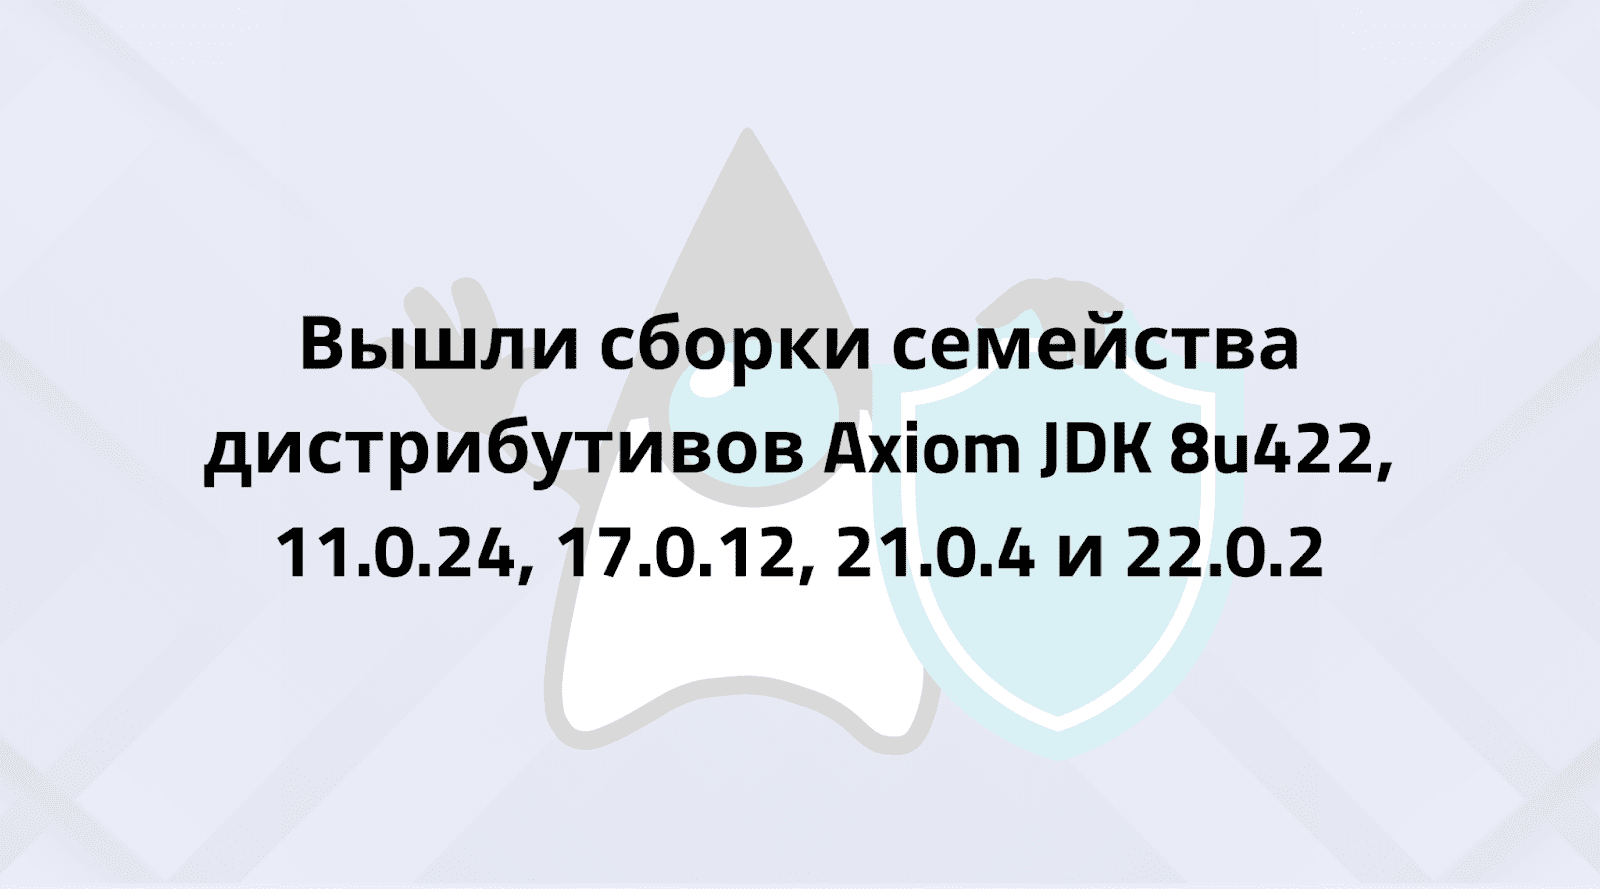 Axiom JDK 8u422, 11.0.24, 17.0.12, 21.0.4 и 22.0.2 доступны для загрузки